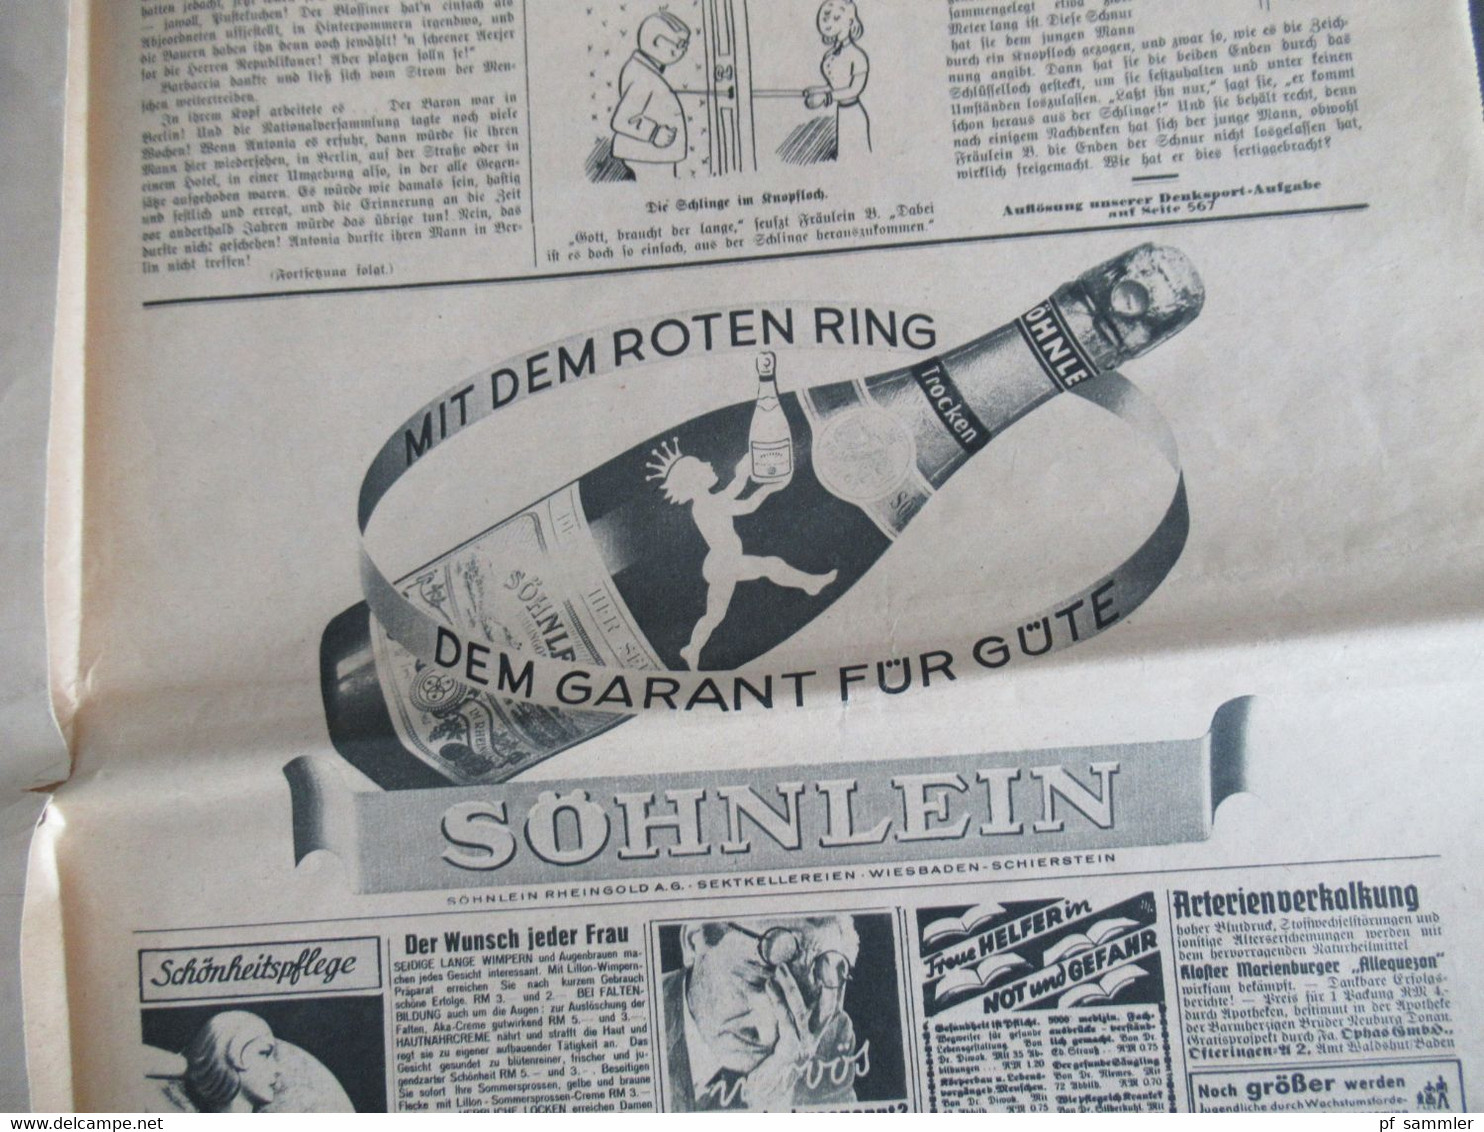 Zeitung im 2. WK vom 17.5.1941 Das Illustrierte Blatt / Frankfurter Illustrierte / Kriegspropaganda